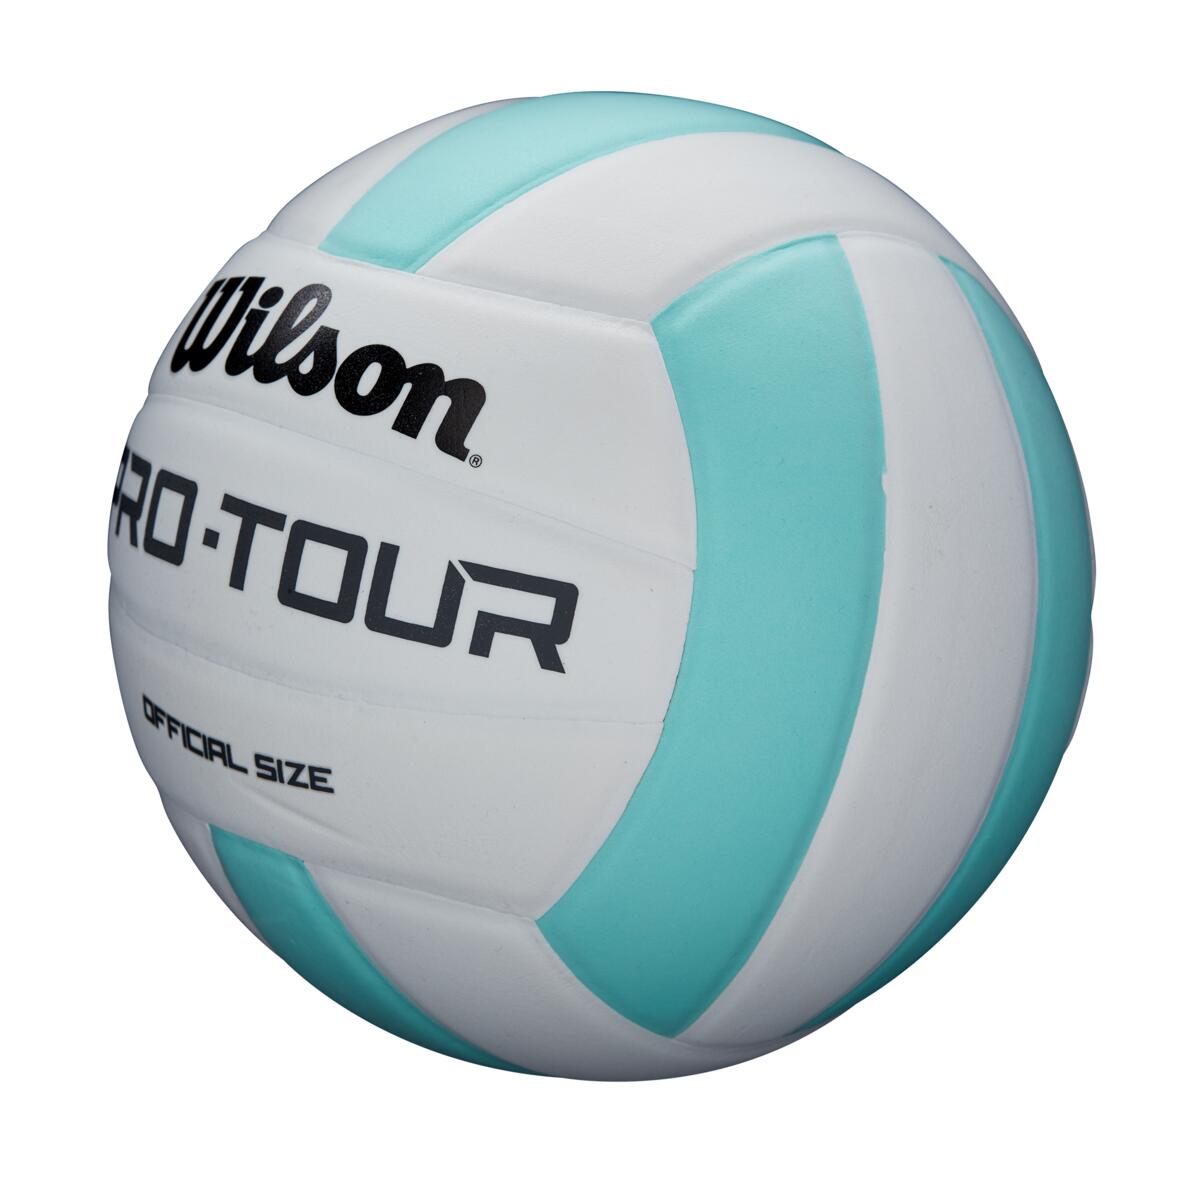 Comprar Balón Voleibol Wilson PXL